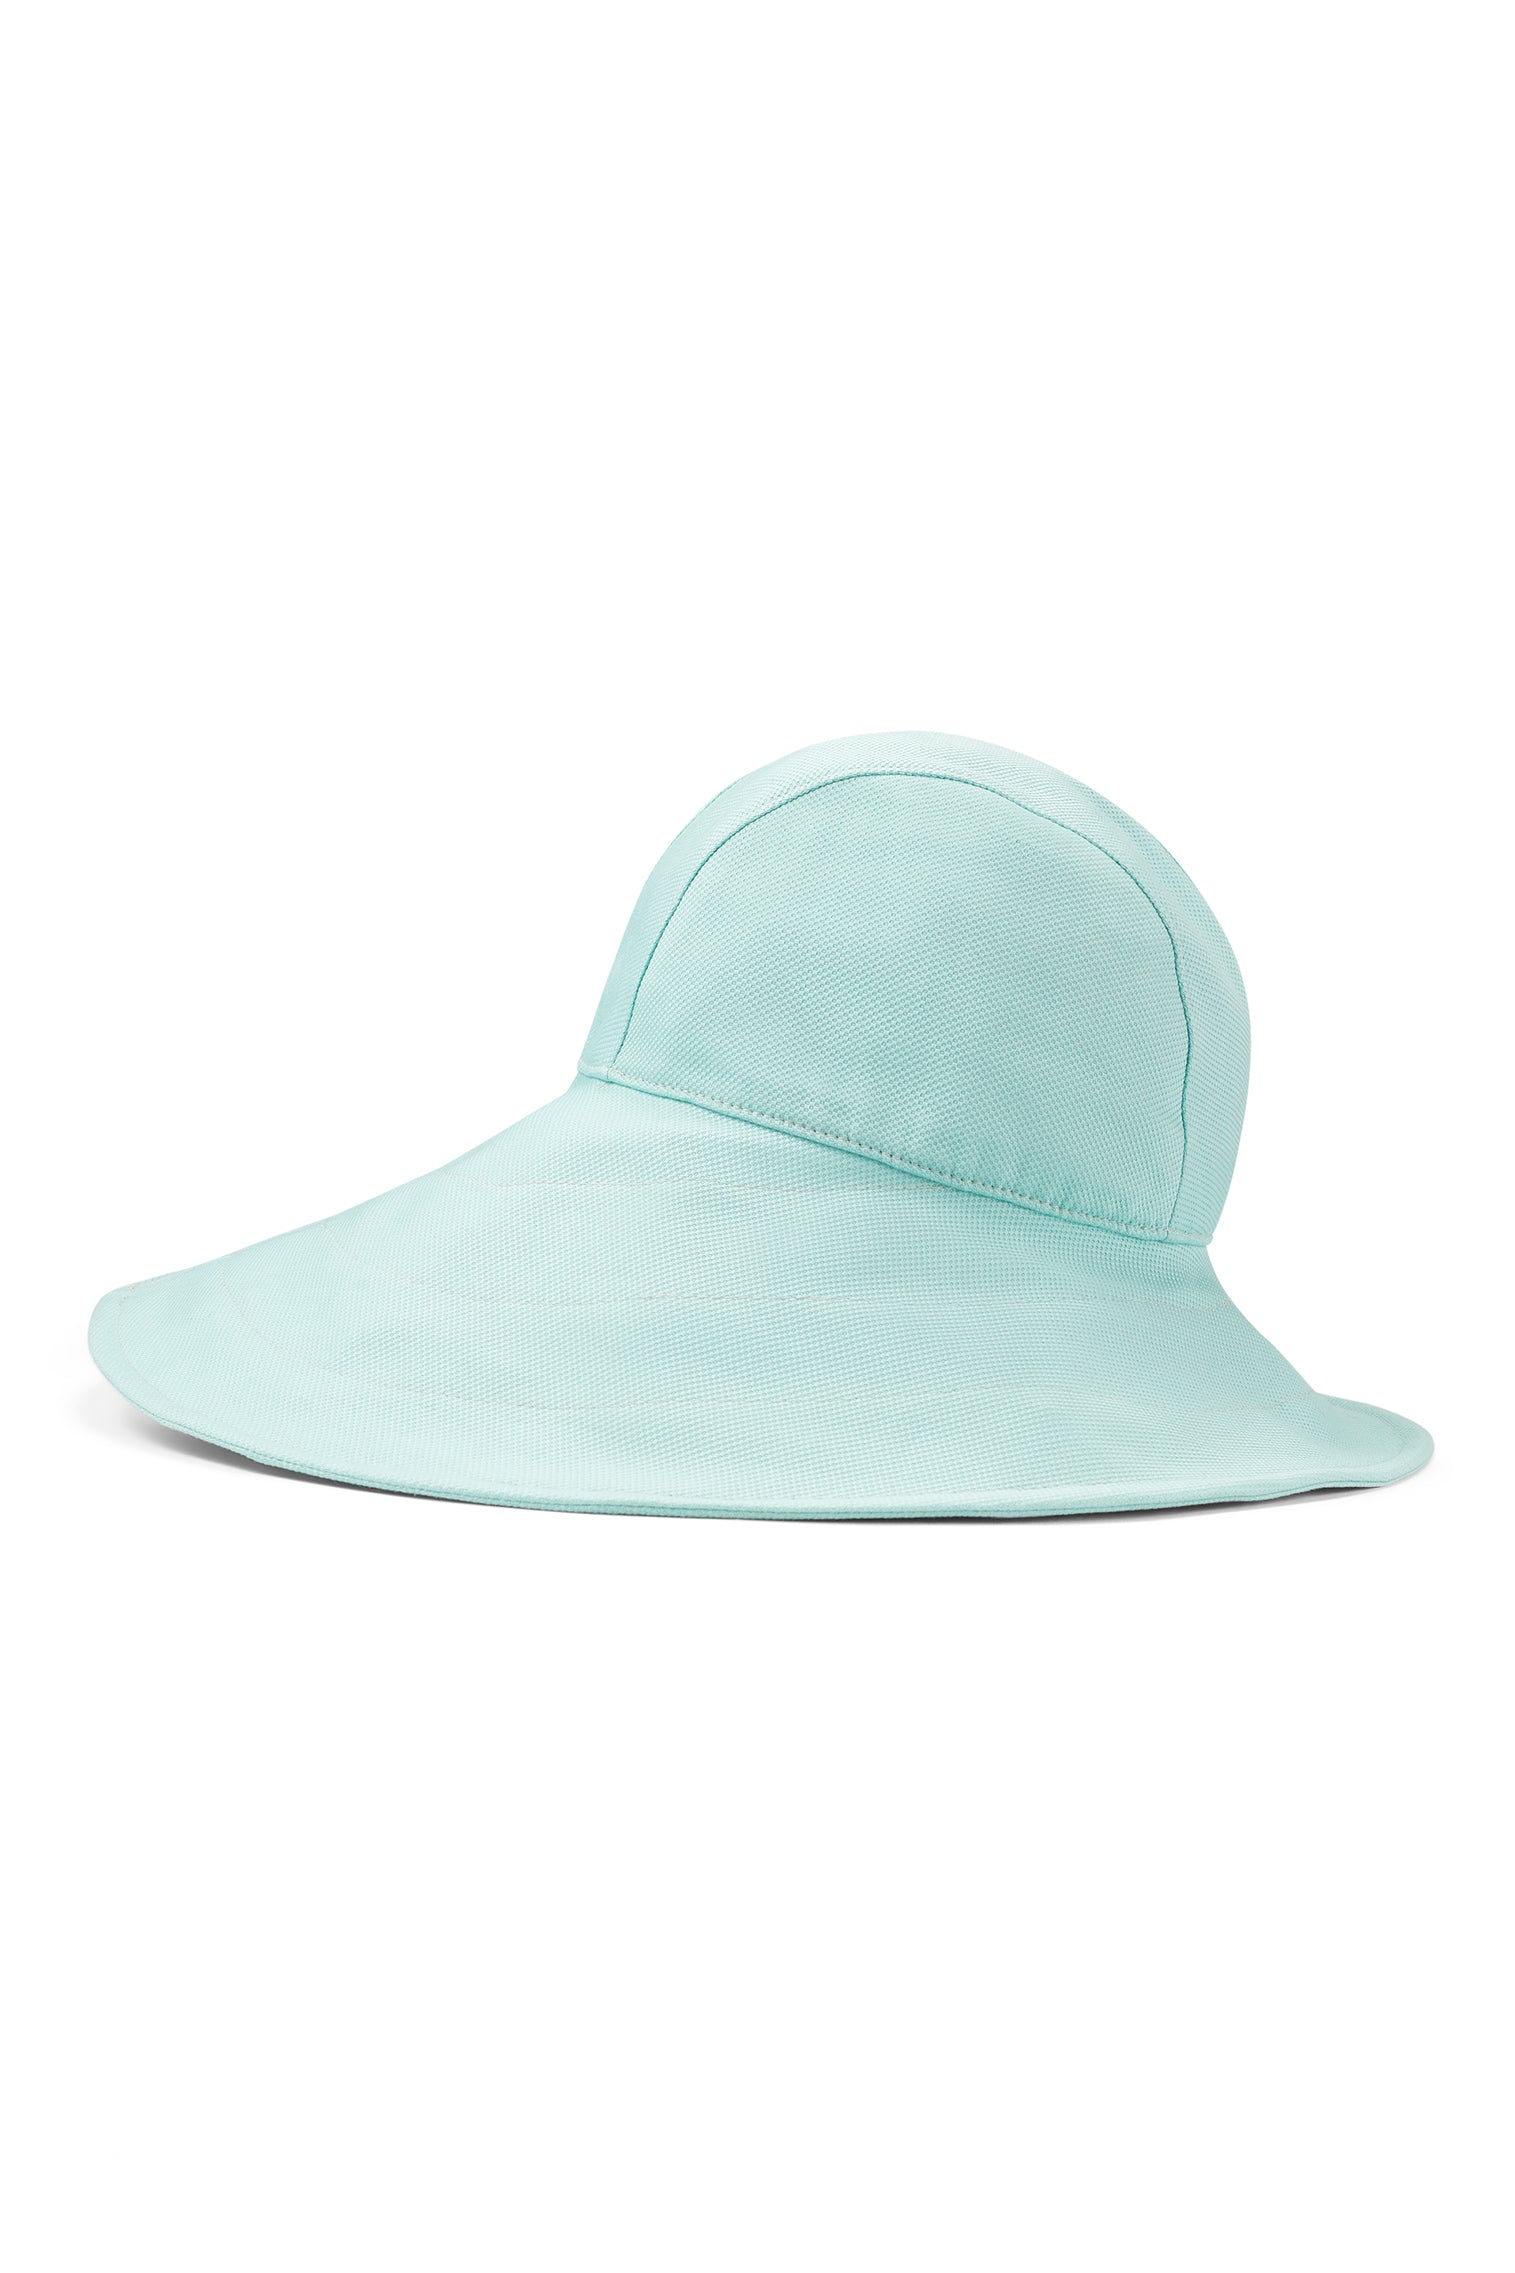 Elowyn Sou'Wester Sun Hat - Women’s Hats - Lock & Co. Hatters London UK